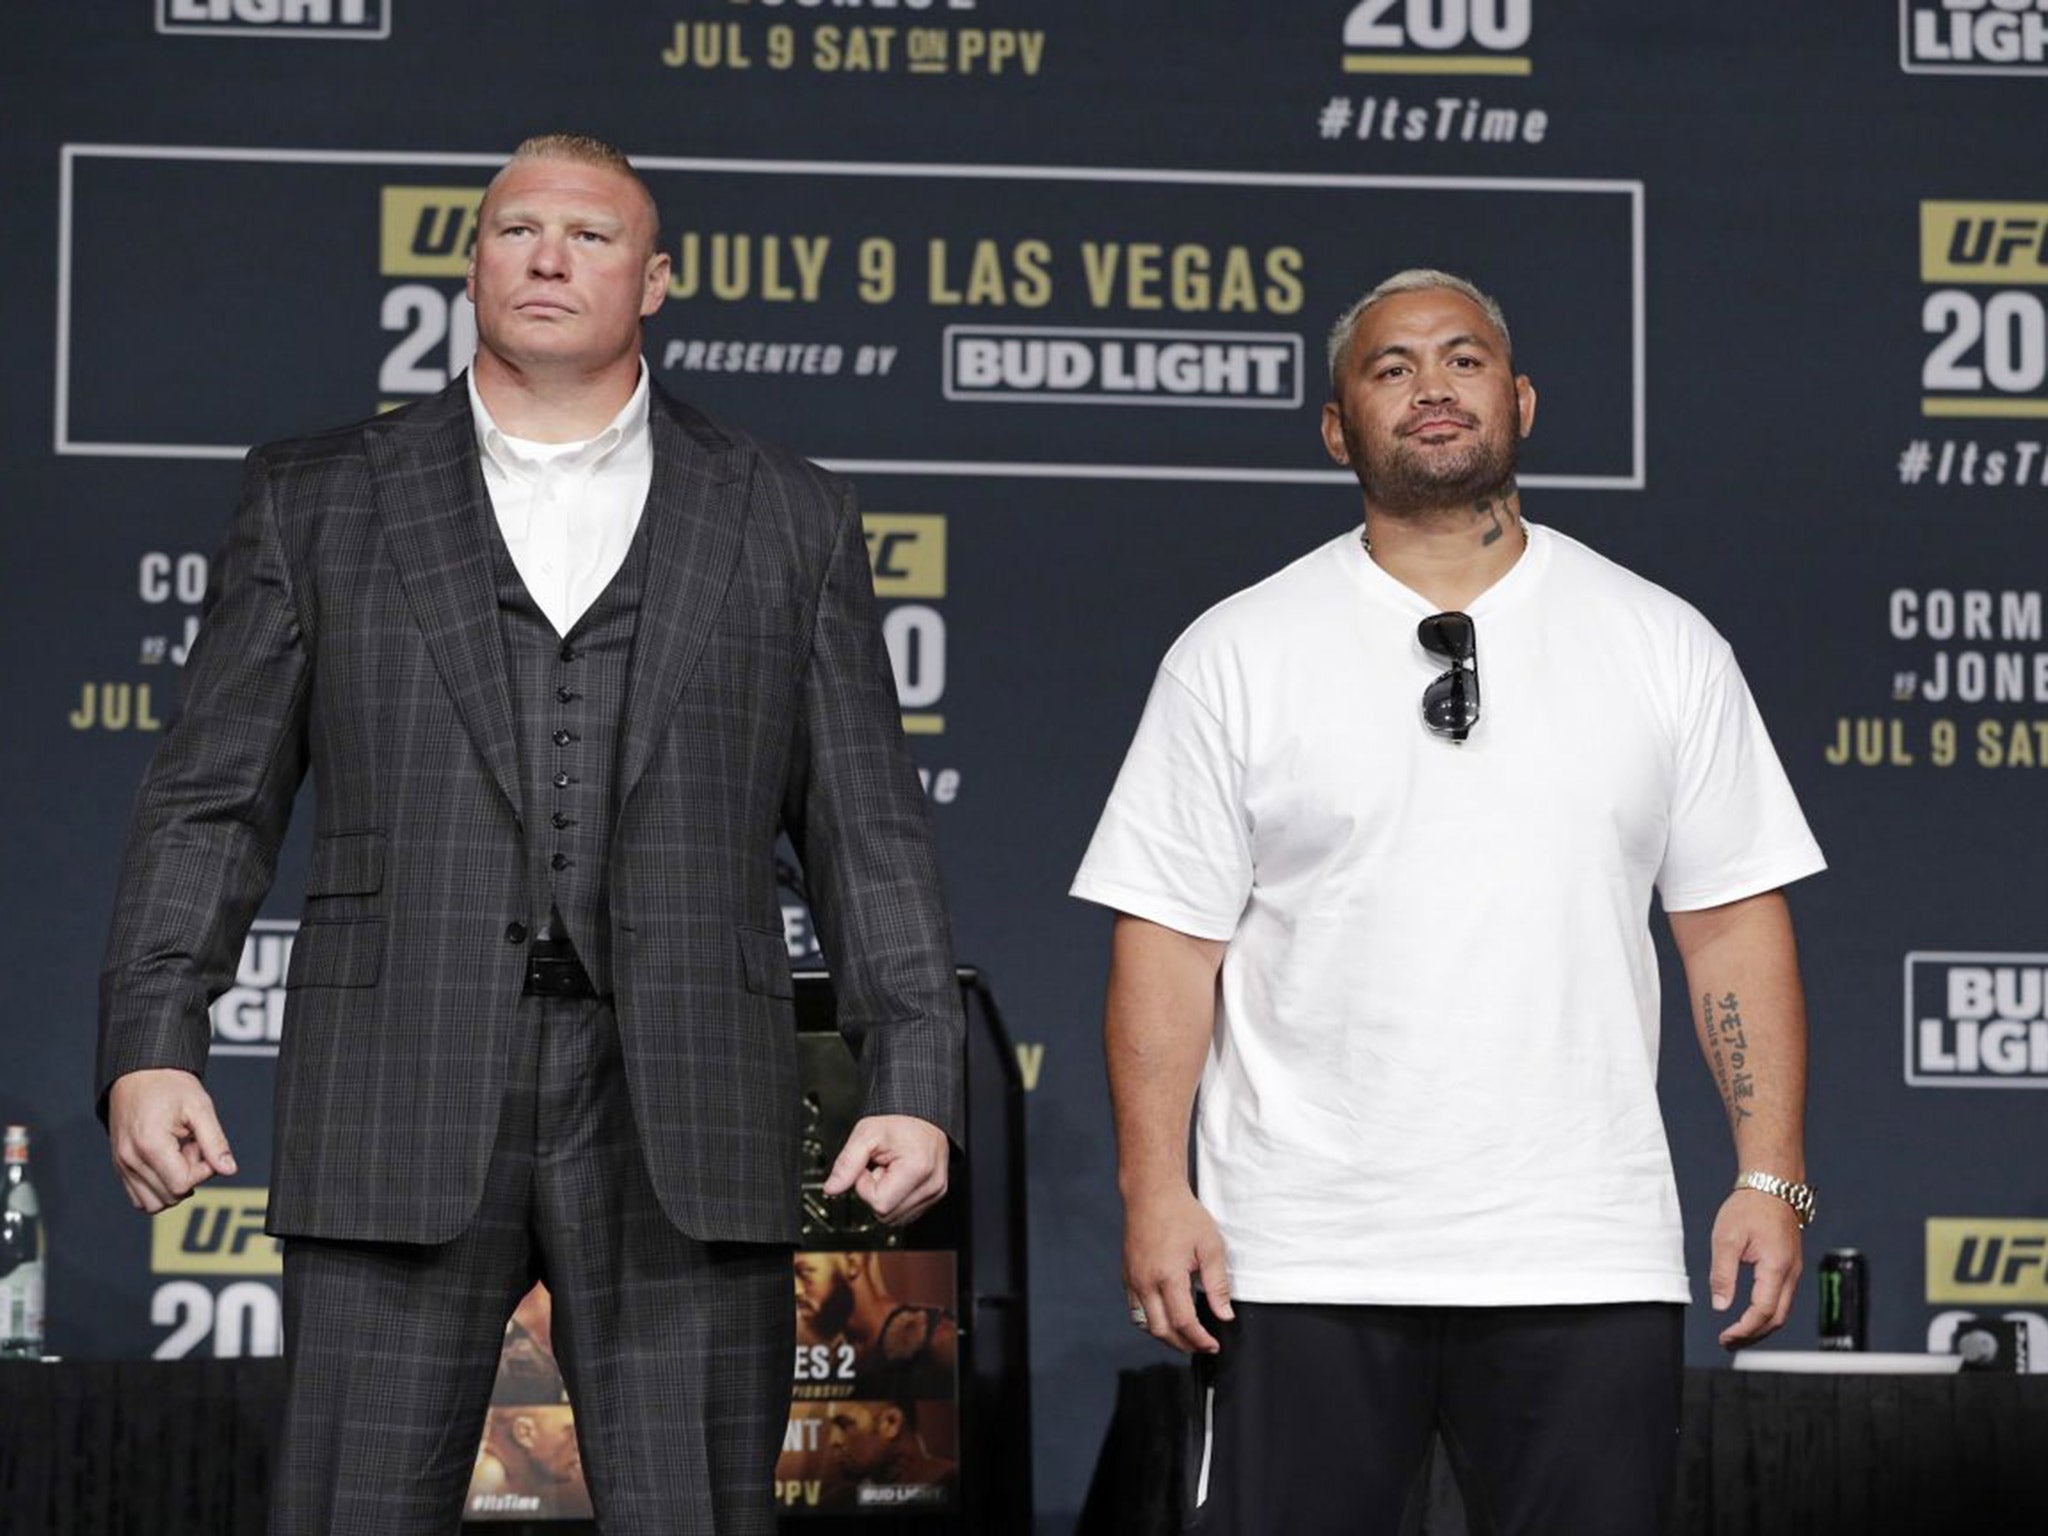 Brock Lesnar (left) will now co-headline UFC 200 against Mark Hunt